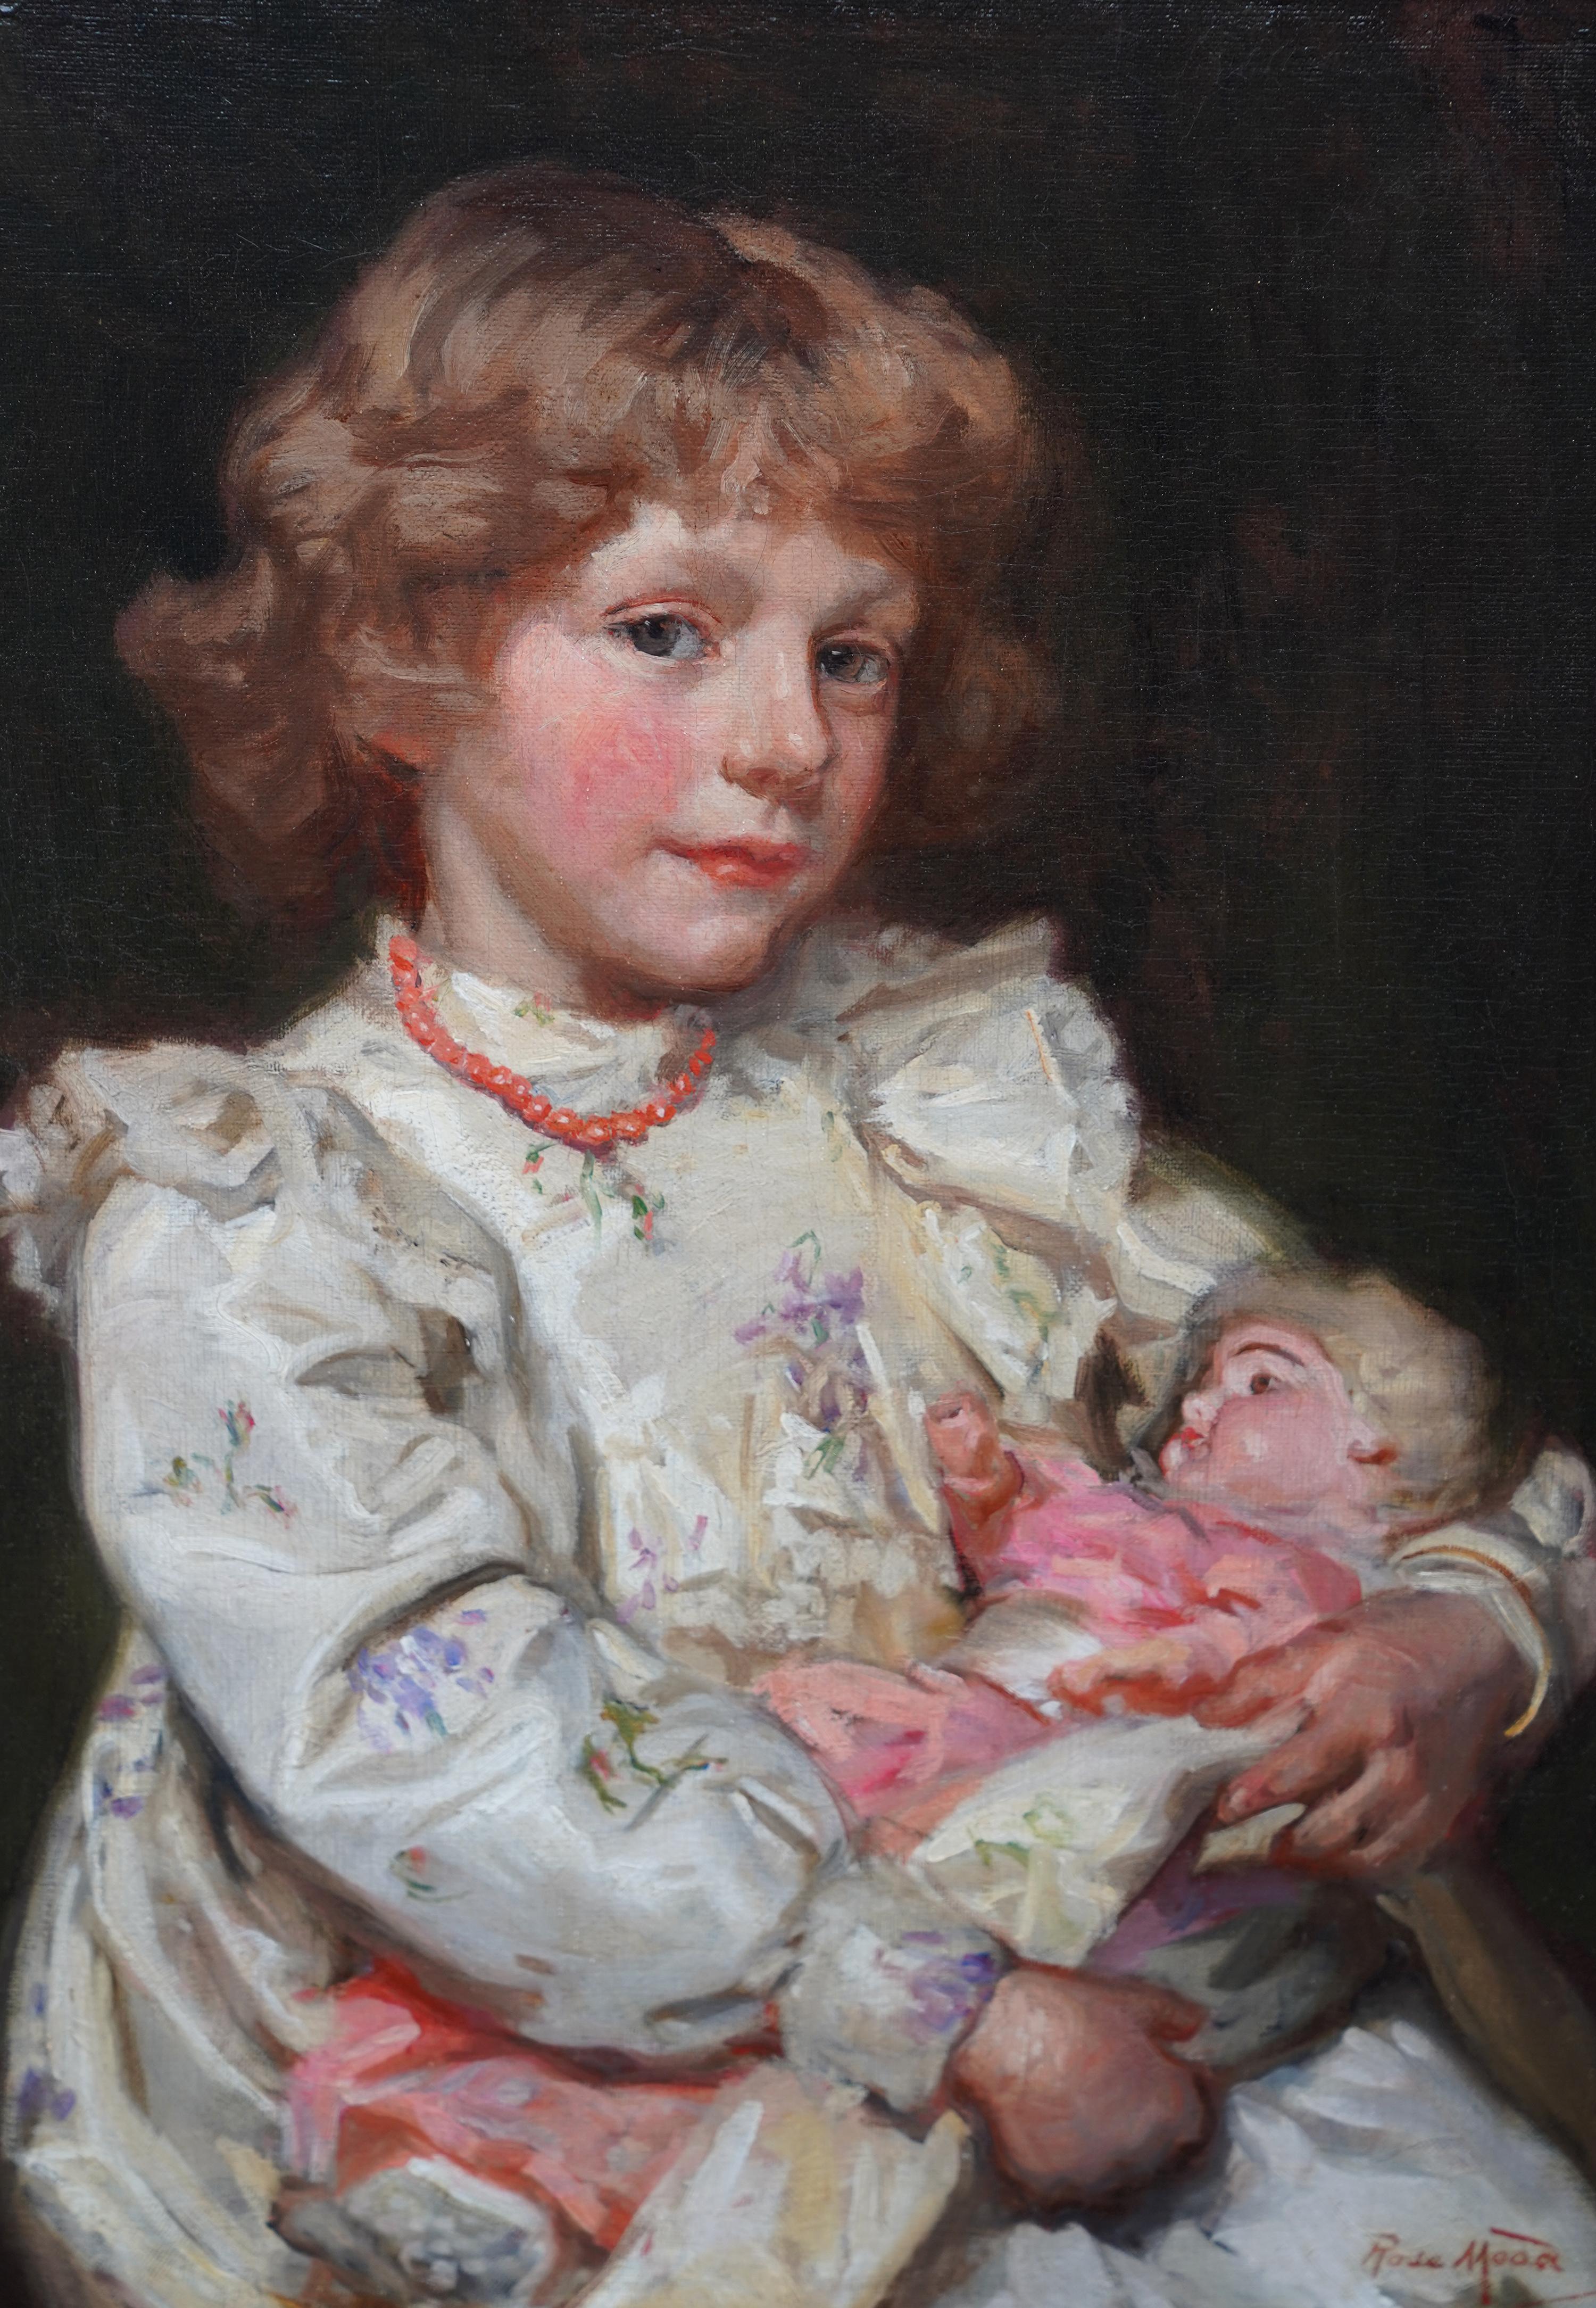 Ce superbe portrait à l'huile britannique de l'époque édouardienne est l'œuvre de la célèbre artiste Emma Rose Mead, connue sous le nom de Rose Mead. Ce superbe tableau, datant de 1907, représente une jeune fille assise avec sa poupée sur les